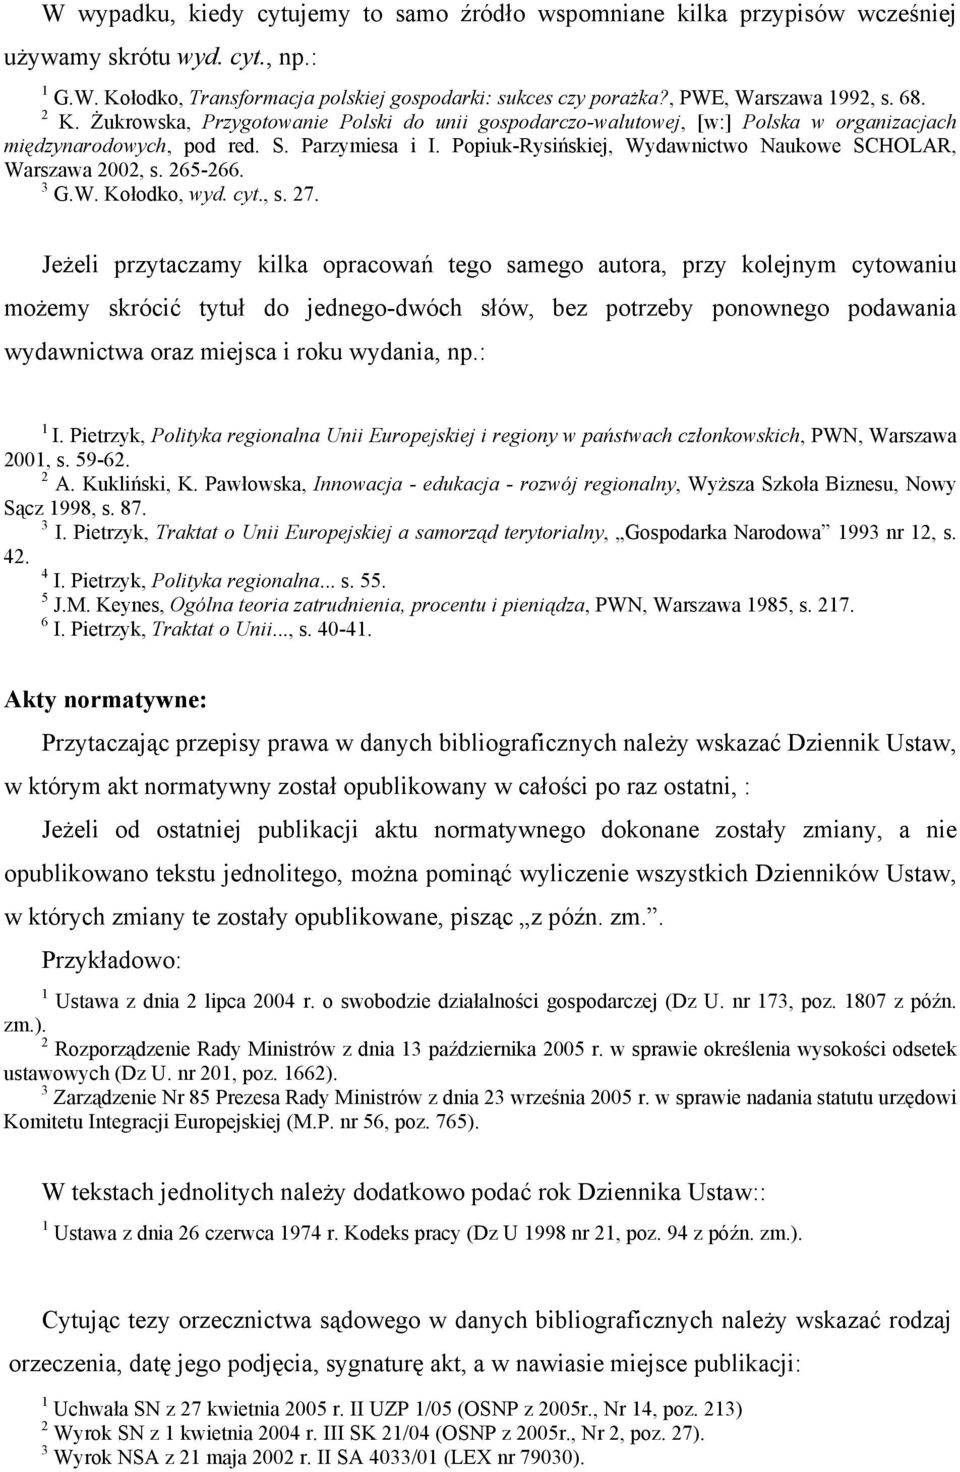 Popiuk-Rysińskiej, Wydawnictwo Naukowe SCHOLAR, Warszawa 2002, s. 265-266. 3 G.W. Kołodko, wyd. cyt., s. 27.